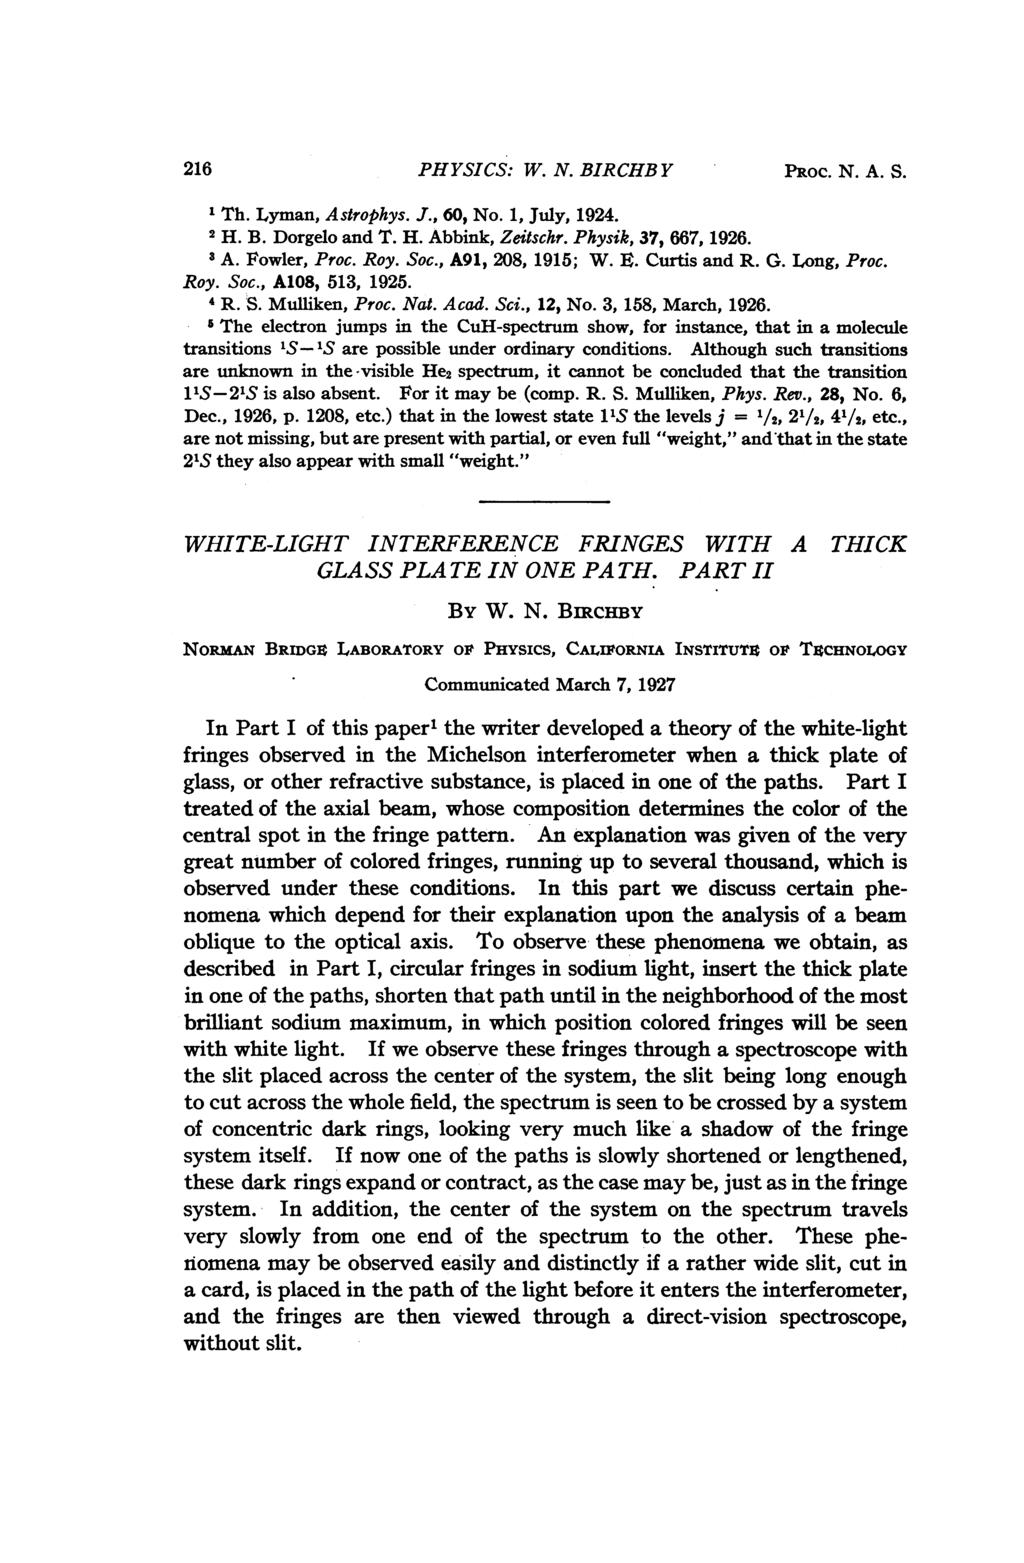 216 PHYSICS: W. N. BIRCHB Y PROC. N. A. S. 1 Th. Lyman, Astrophys. J., 60, No. 1, July, 1924. 2 H. B. Dorgelo and T. H. Abbink, Zeitschr. Physik, 37, 667, 1926. 3 A. Fowler, Proc. Roy. Soc.